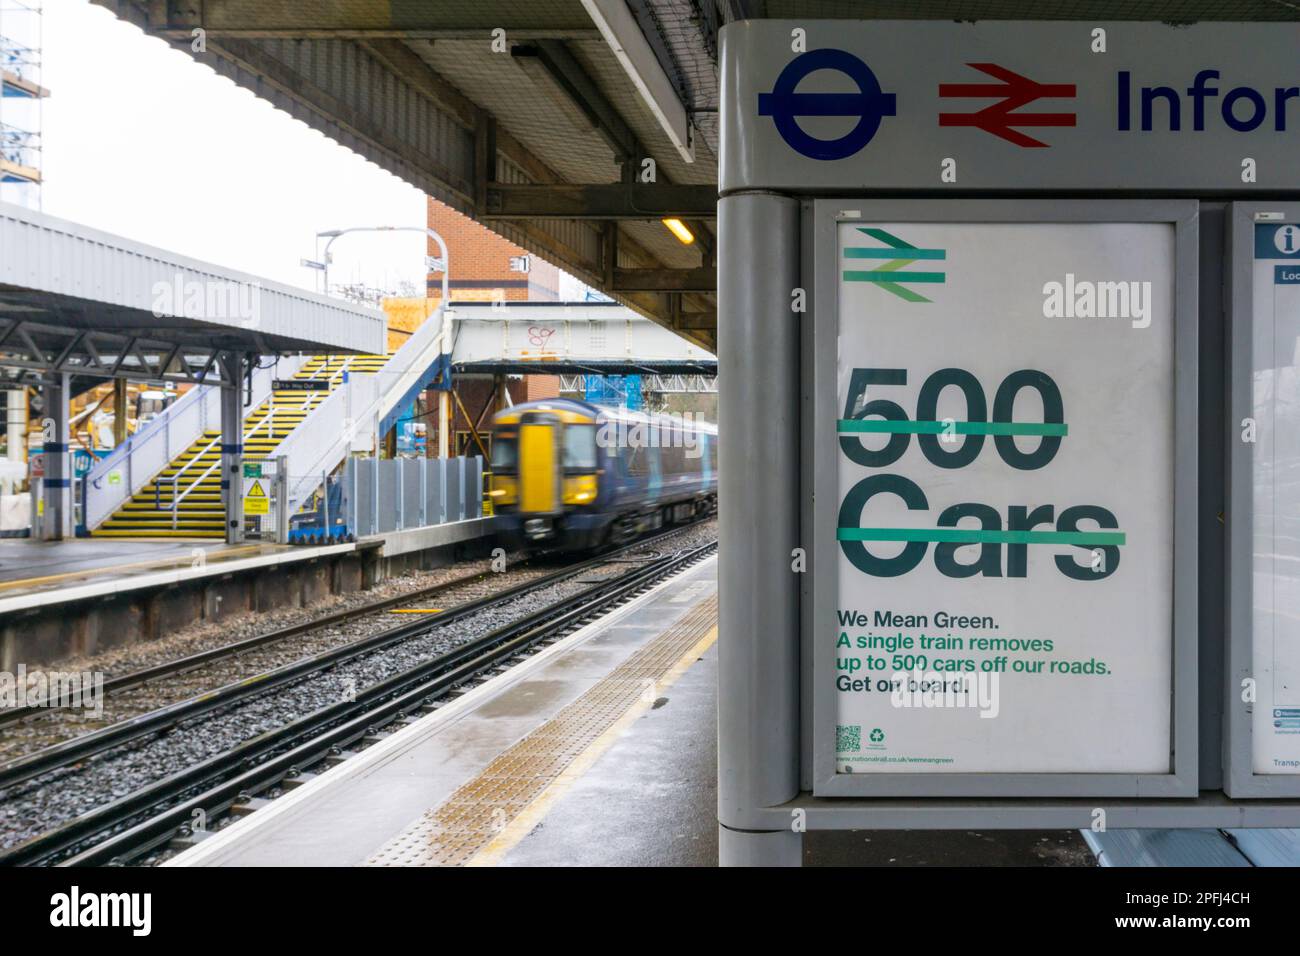 Une affiche à la gare de Petts Wood prétend qu'un train enlève jusqu'à 500 voitures de la route. Banque D'Images